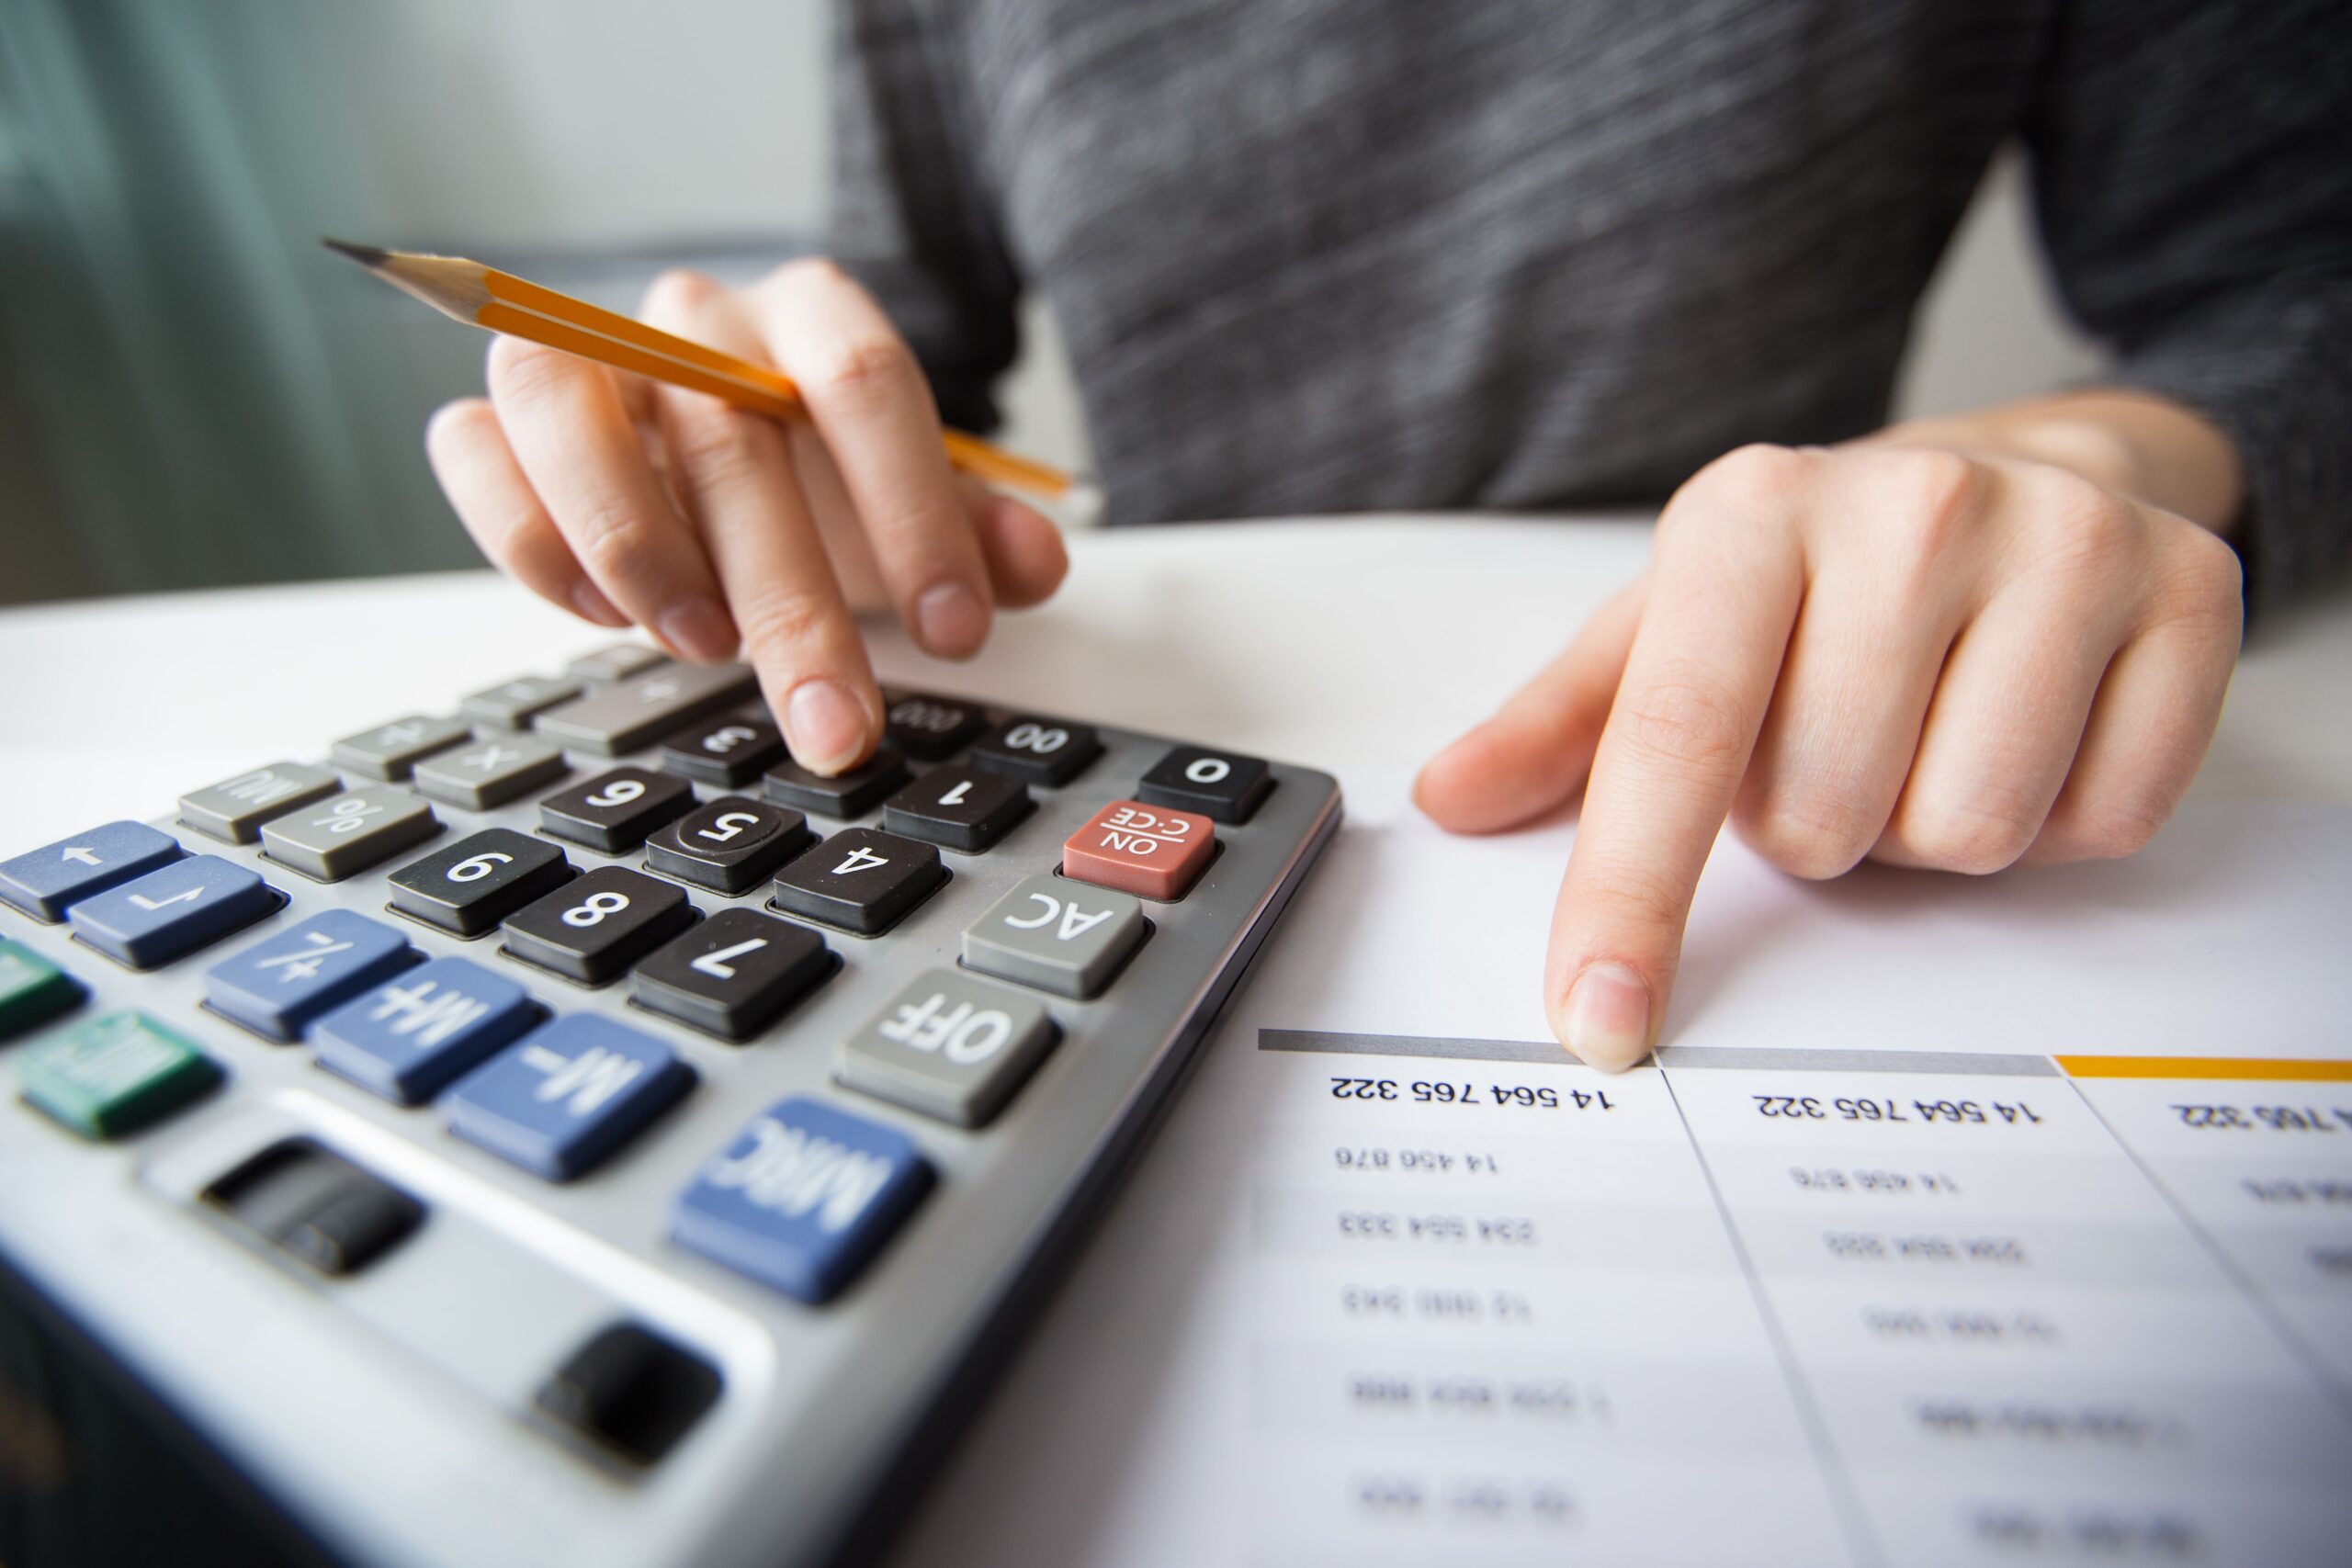 Pessoa em ambiente corporativo fazendo cálculos em uma calculadora, representando o controle de custos no Asana.